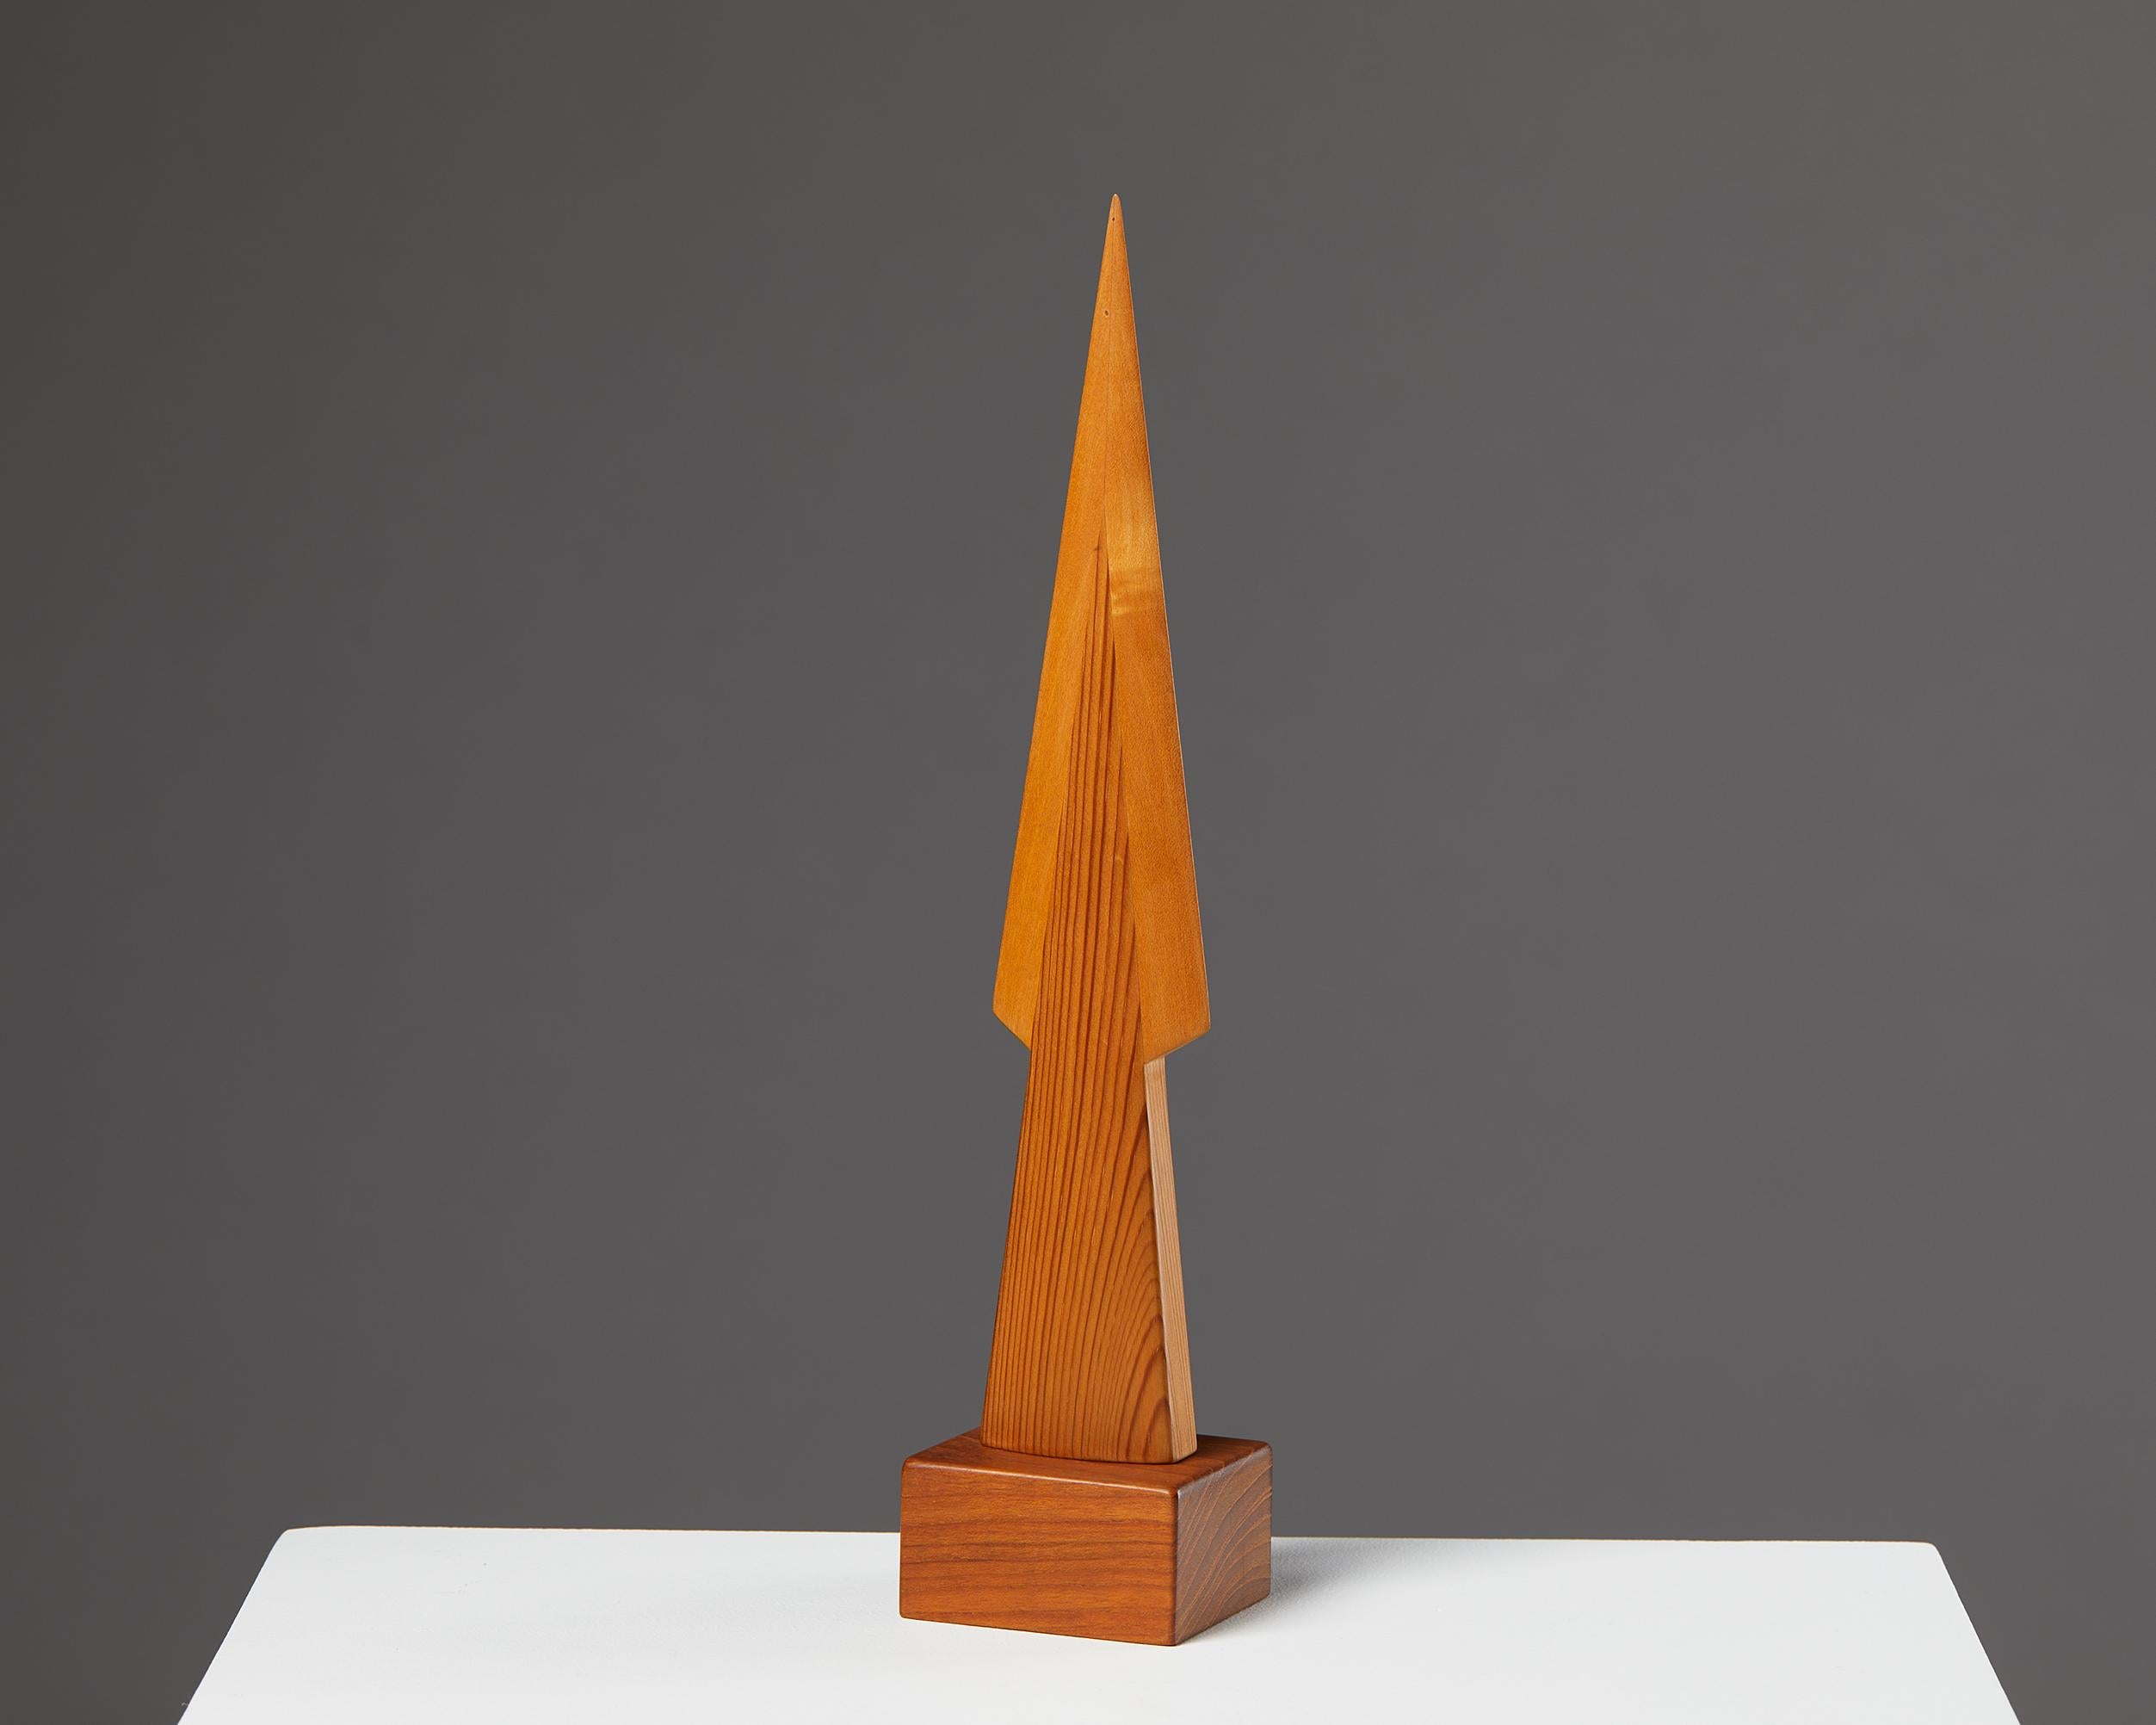 Sculpture de Johnny Mattsson,
Danemark. 1950s.
Pin et teck.
Estampillé.

Mesures : H : 31.5 cm / 12 1/4